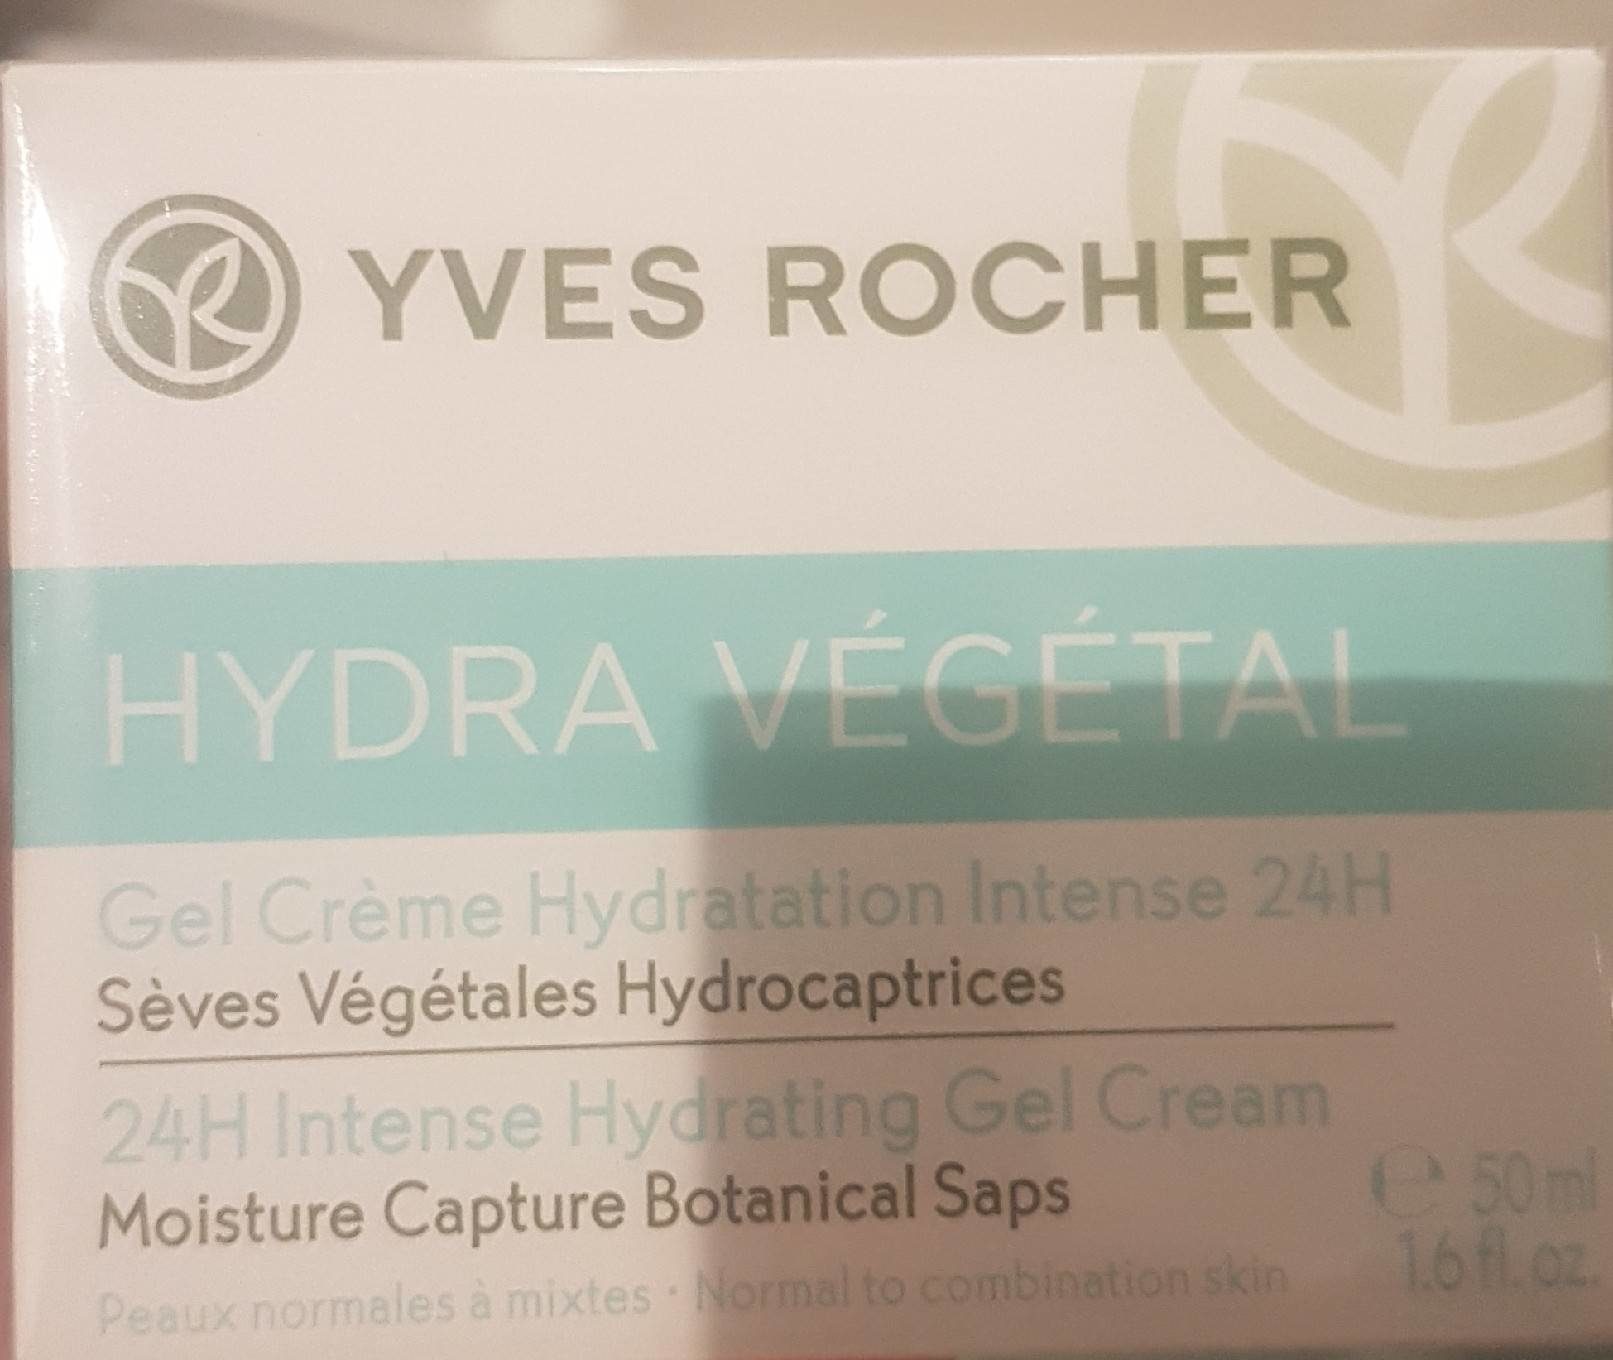 Yves Rocher Hydra Vegetal Creme Hydrating Gel Cream - 製品 - fr